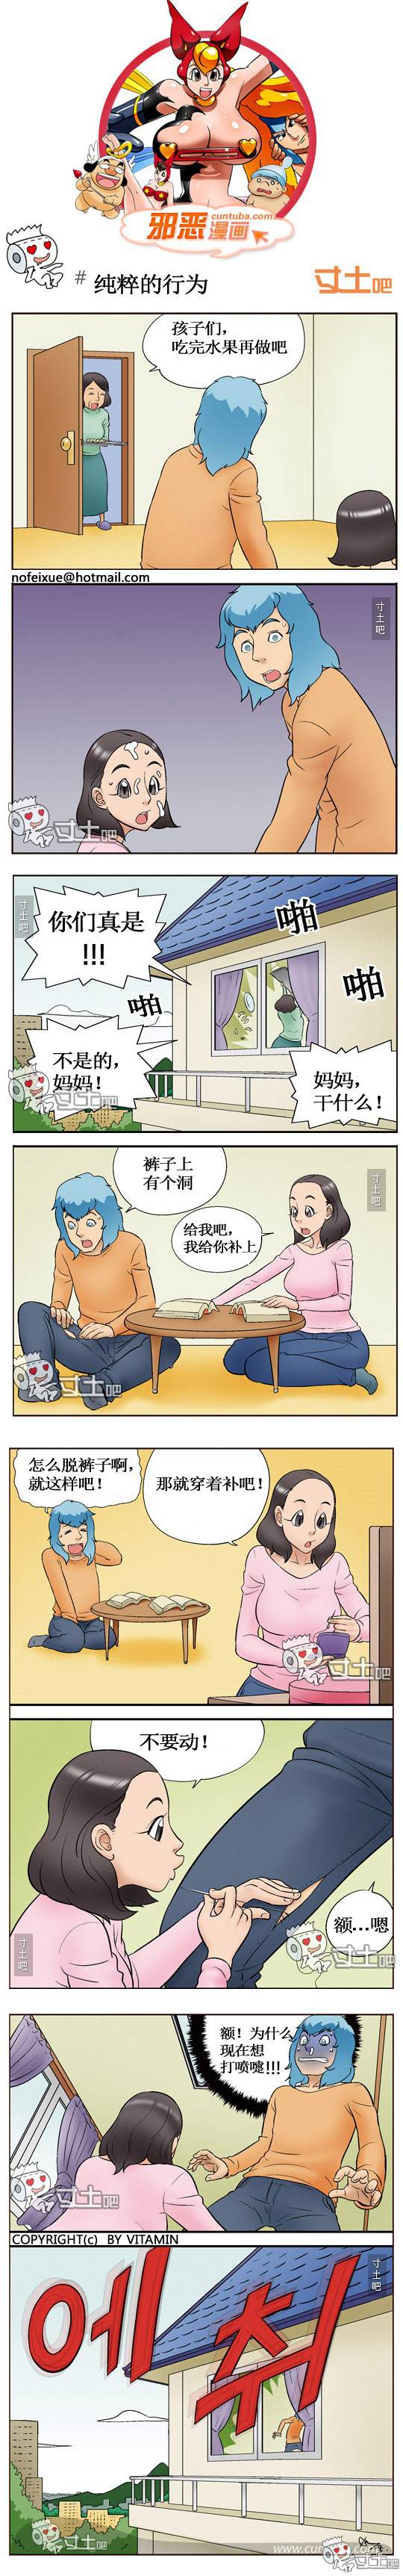 邪恶漫画爆笑囧图第294刊：男人们的破裤子